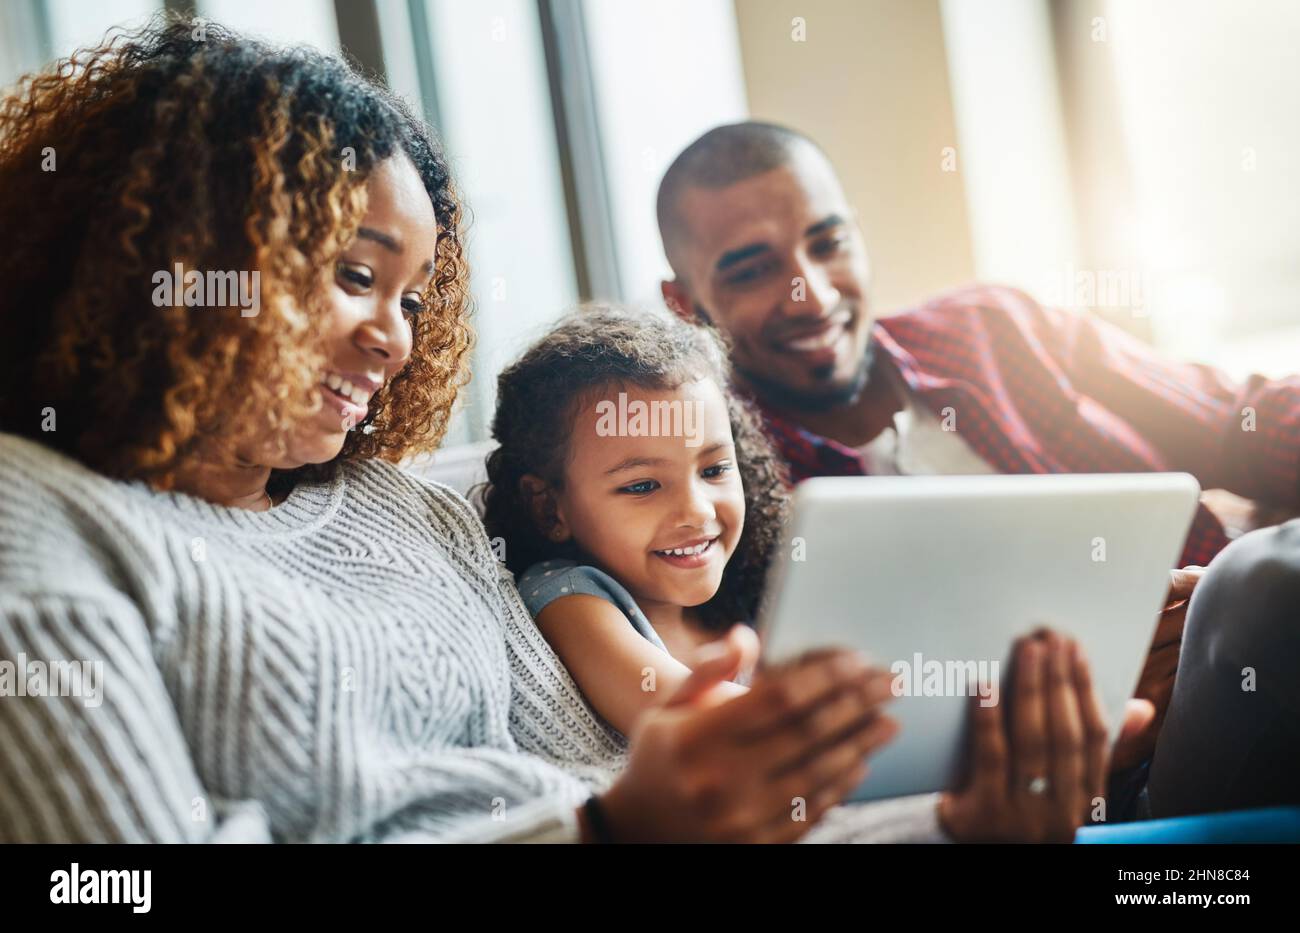 Ein technologiebewusstes kleines Mädchen aufziehen. Aufnahme eines entzückenden kleinen Mädchens und ihrer Eltern, die zu Hause ein digitales Tablet auf dem Sofa benutzen. Stockfoto